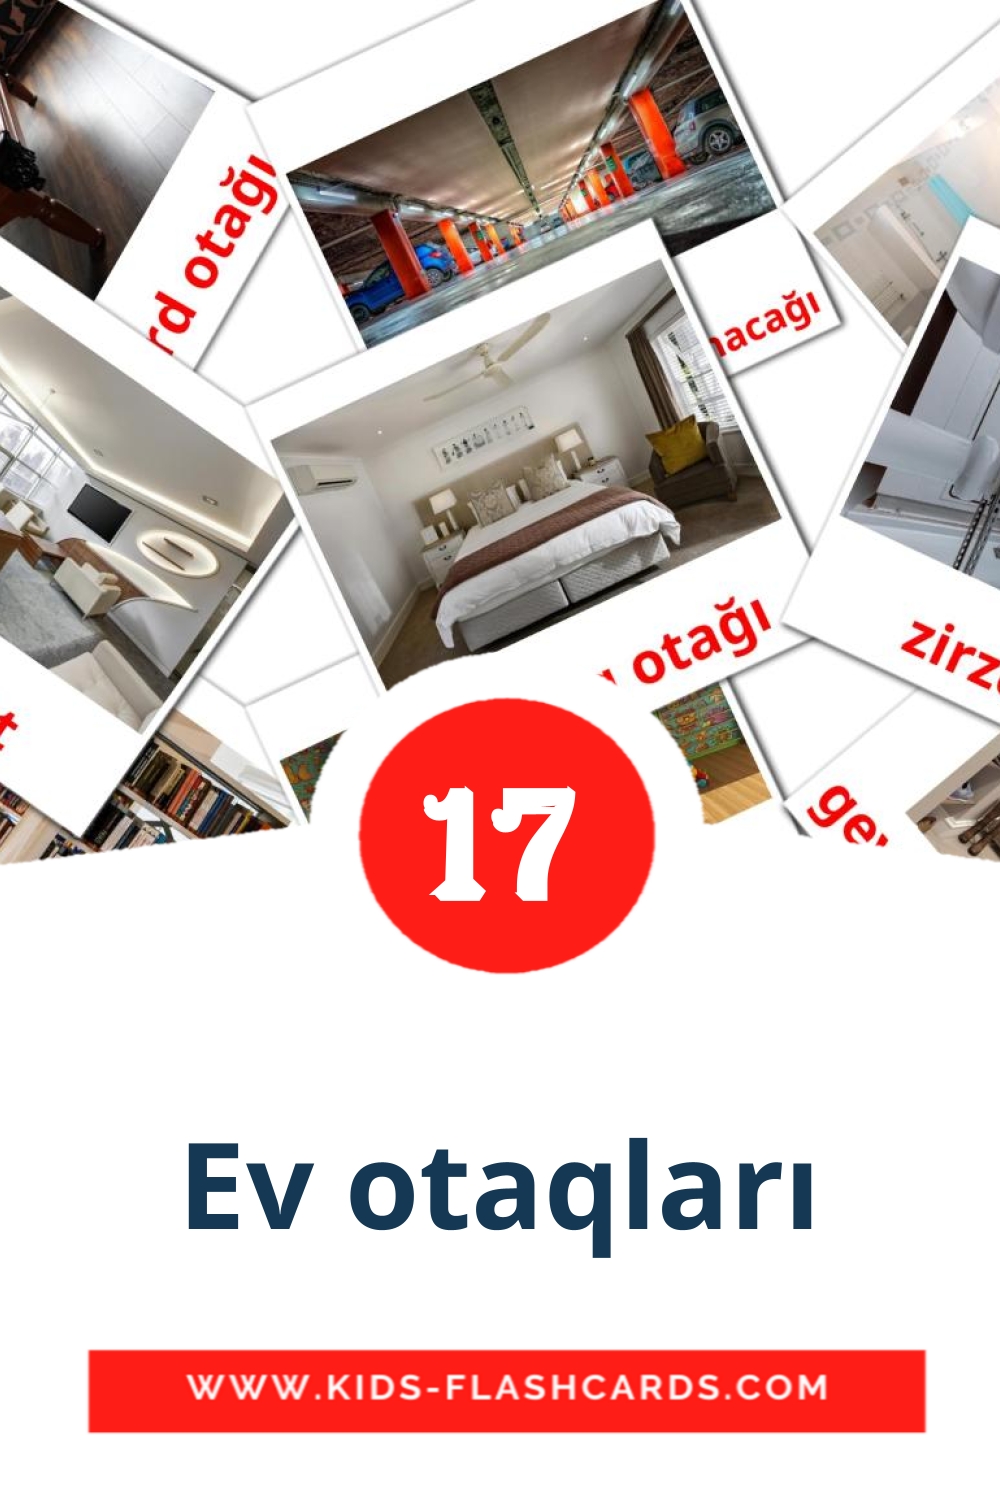 17 Ev otaqları Picture Cards for Kindergarden in azerbaijani